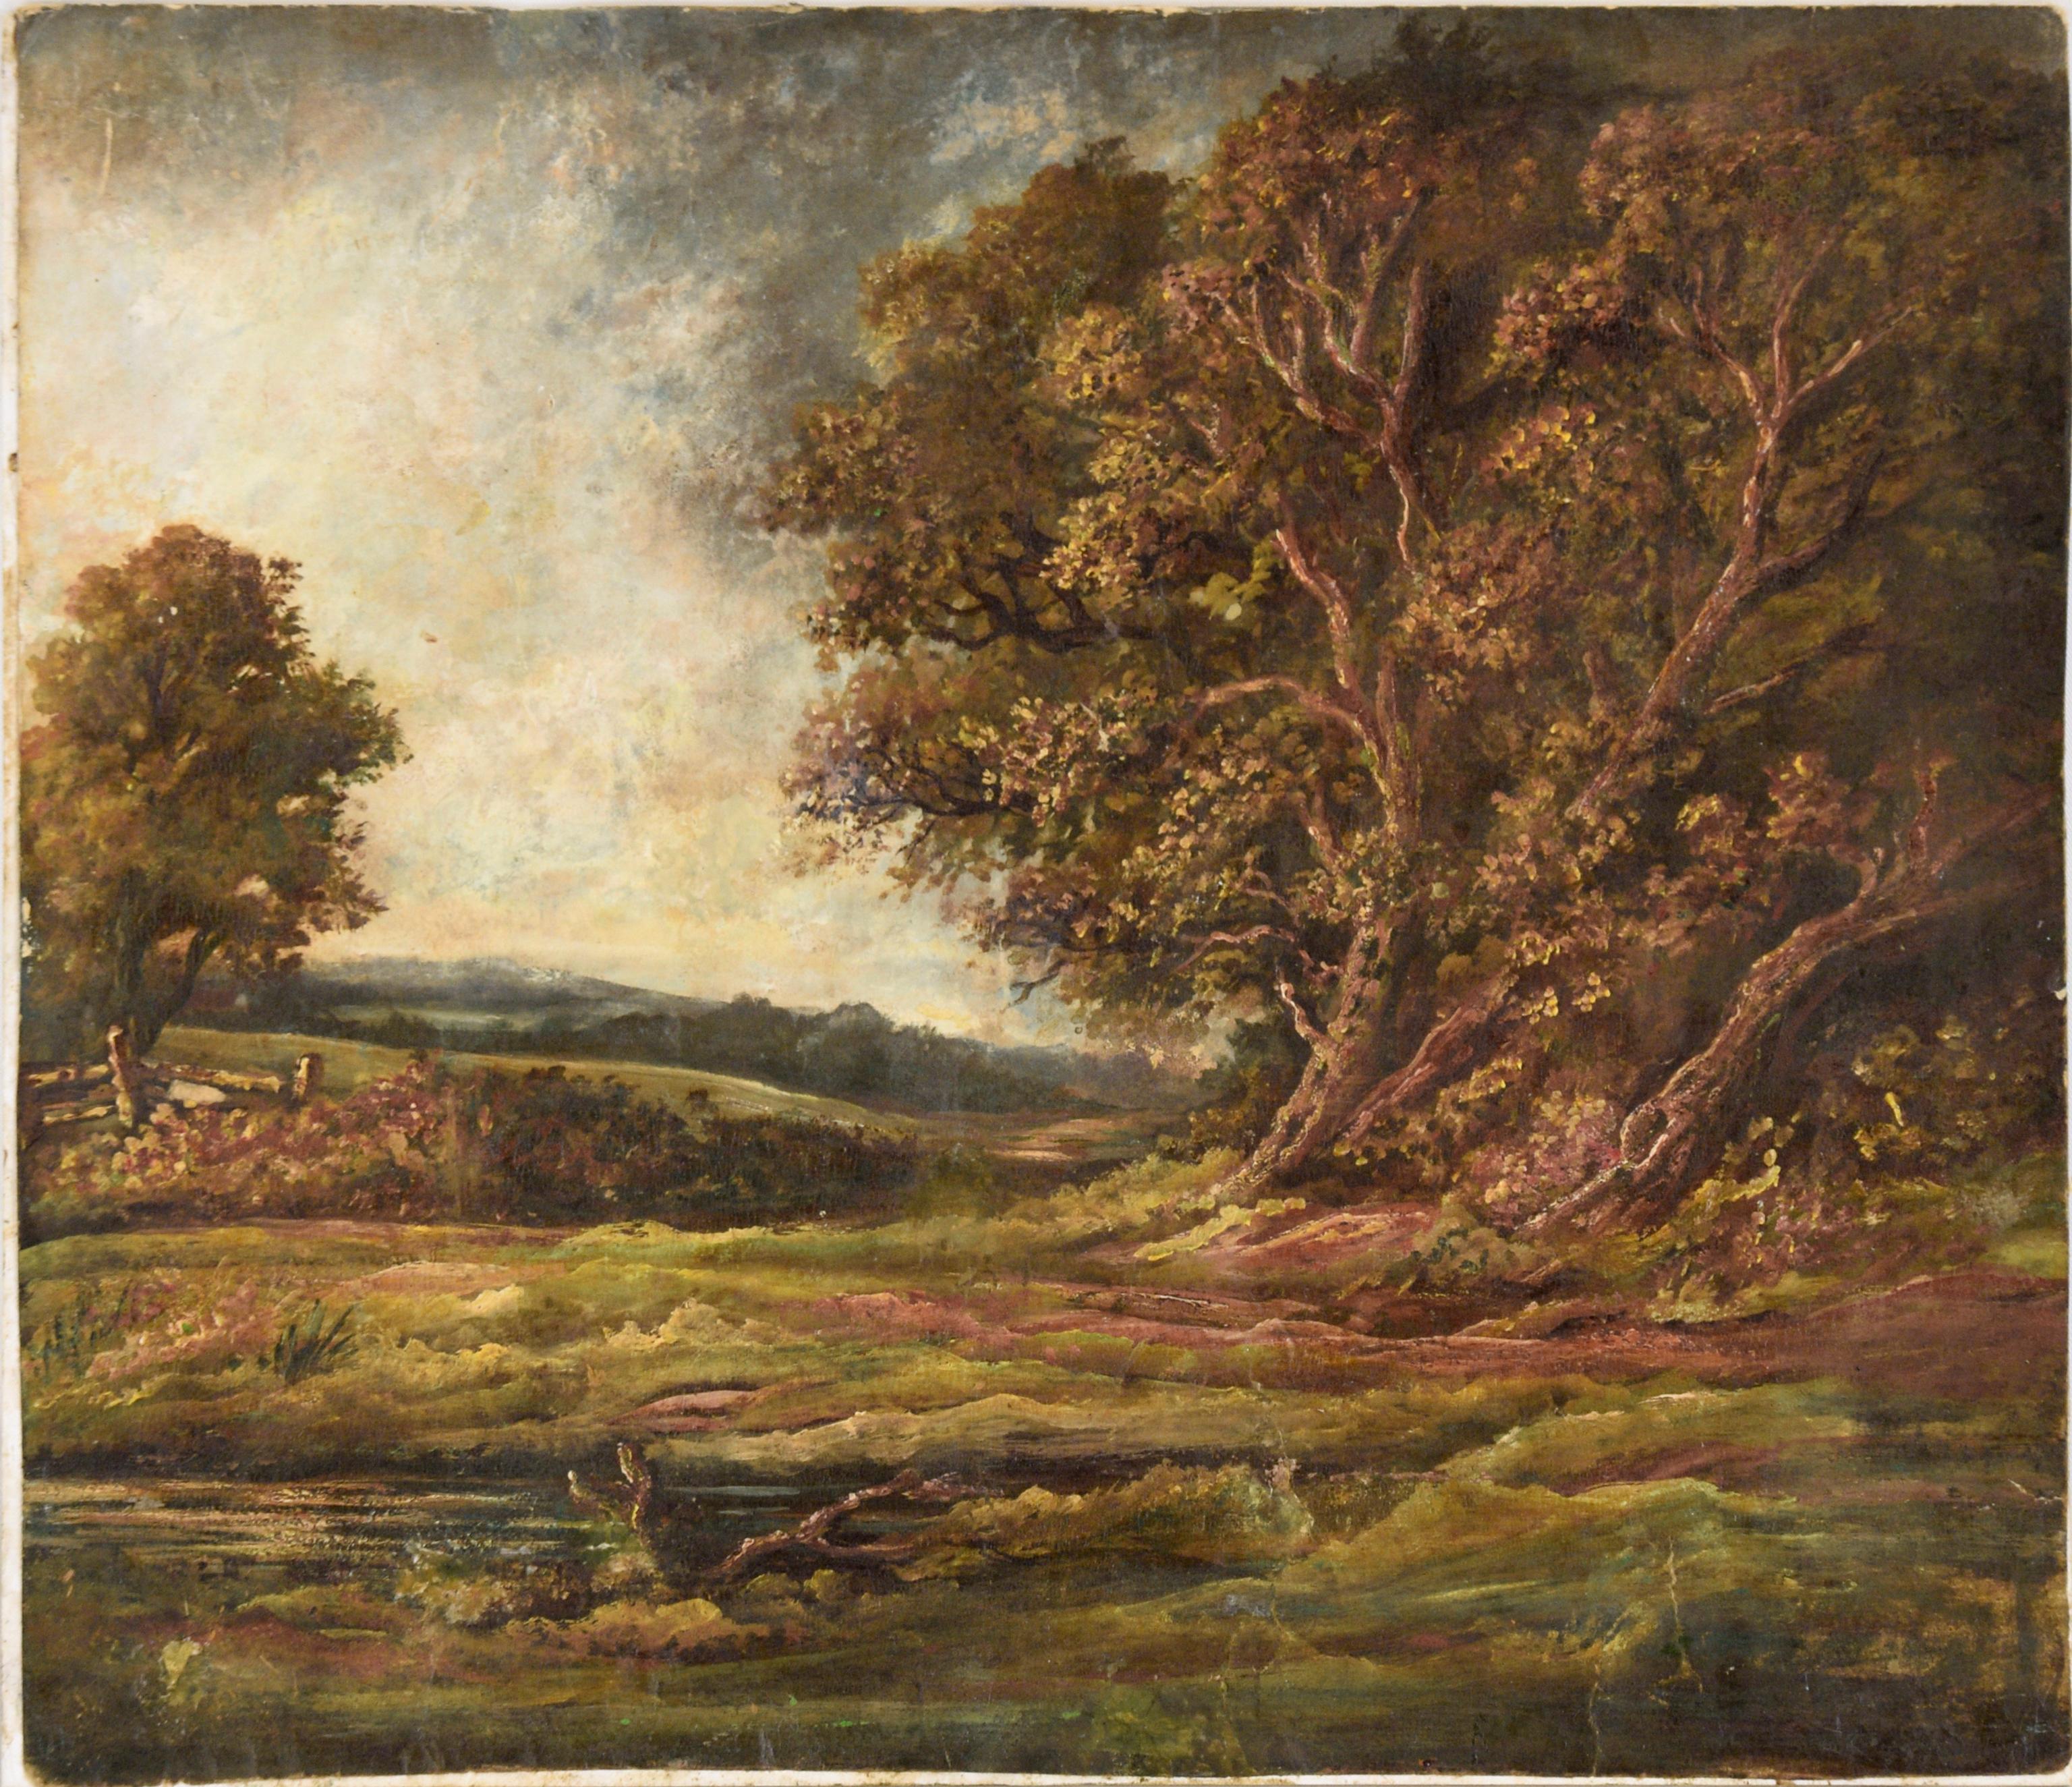 Naturkundliche Landschaftsszene aus den späten 1800er Jahren in Gouache auf Papier